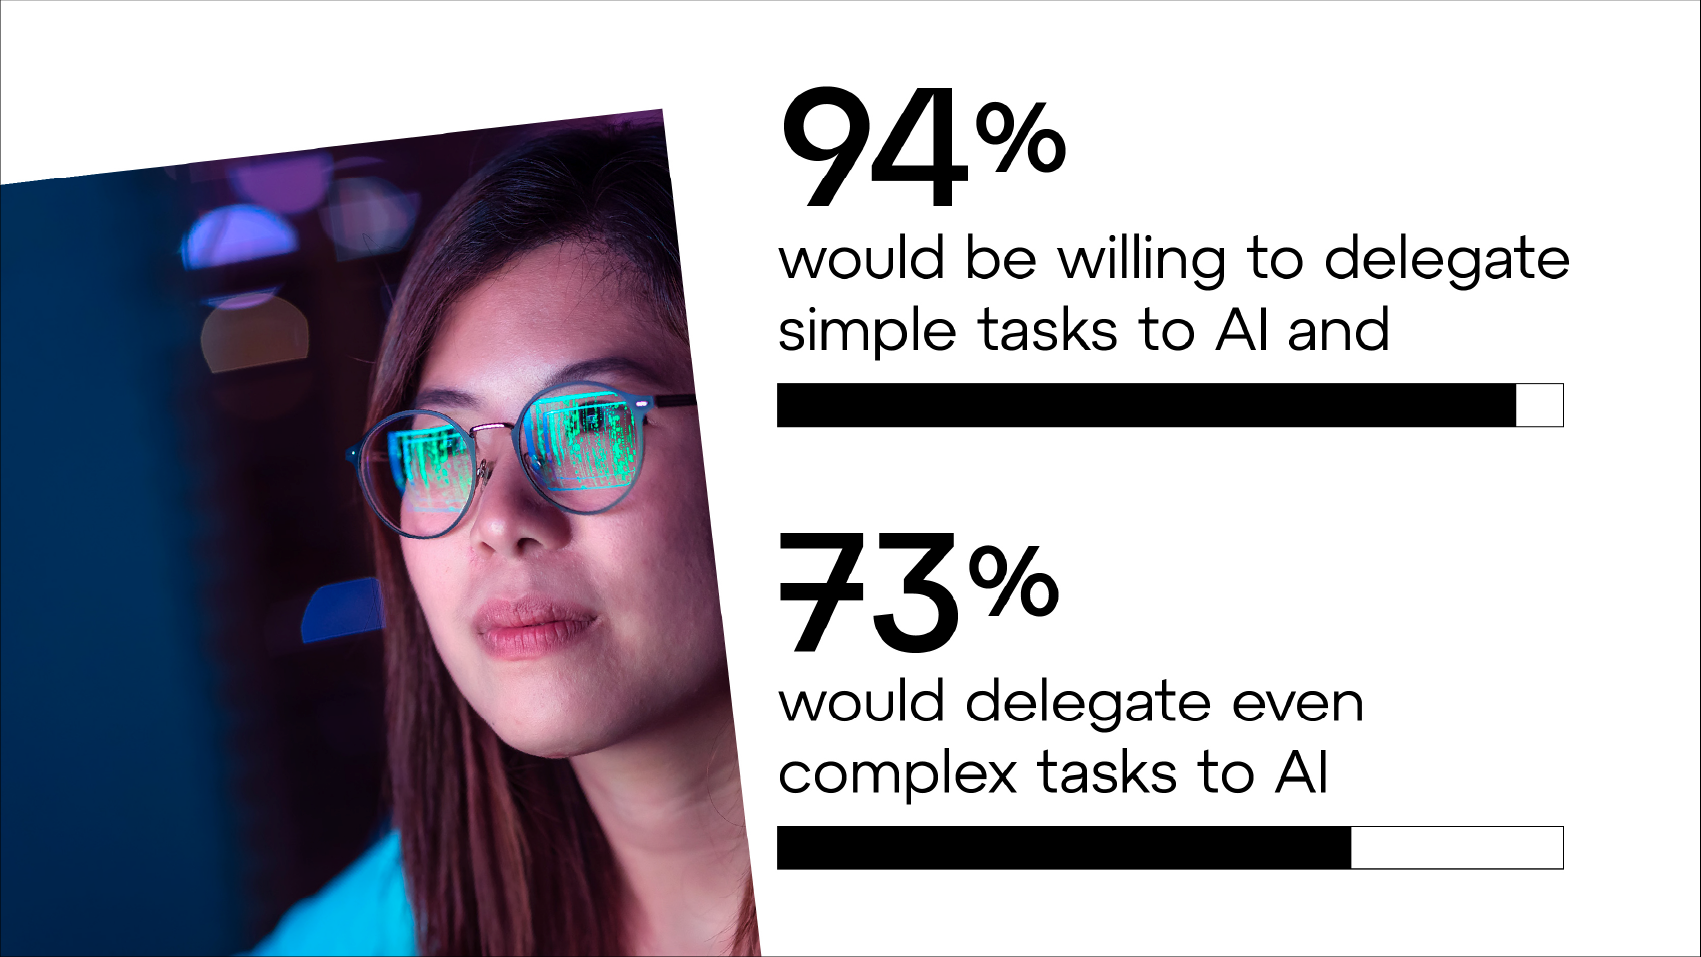 94 % d'entre eux affirment être prêts à déléguer des tâches simples à l'IA et 73 % d'entre eux seraient même prêts à déléguer des tâches plus complexes à l'IA.